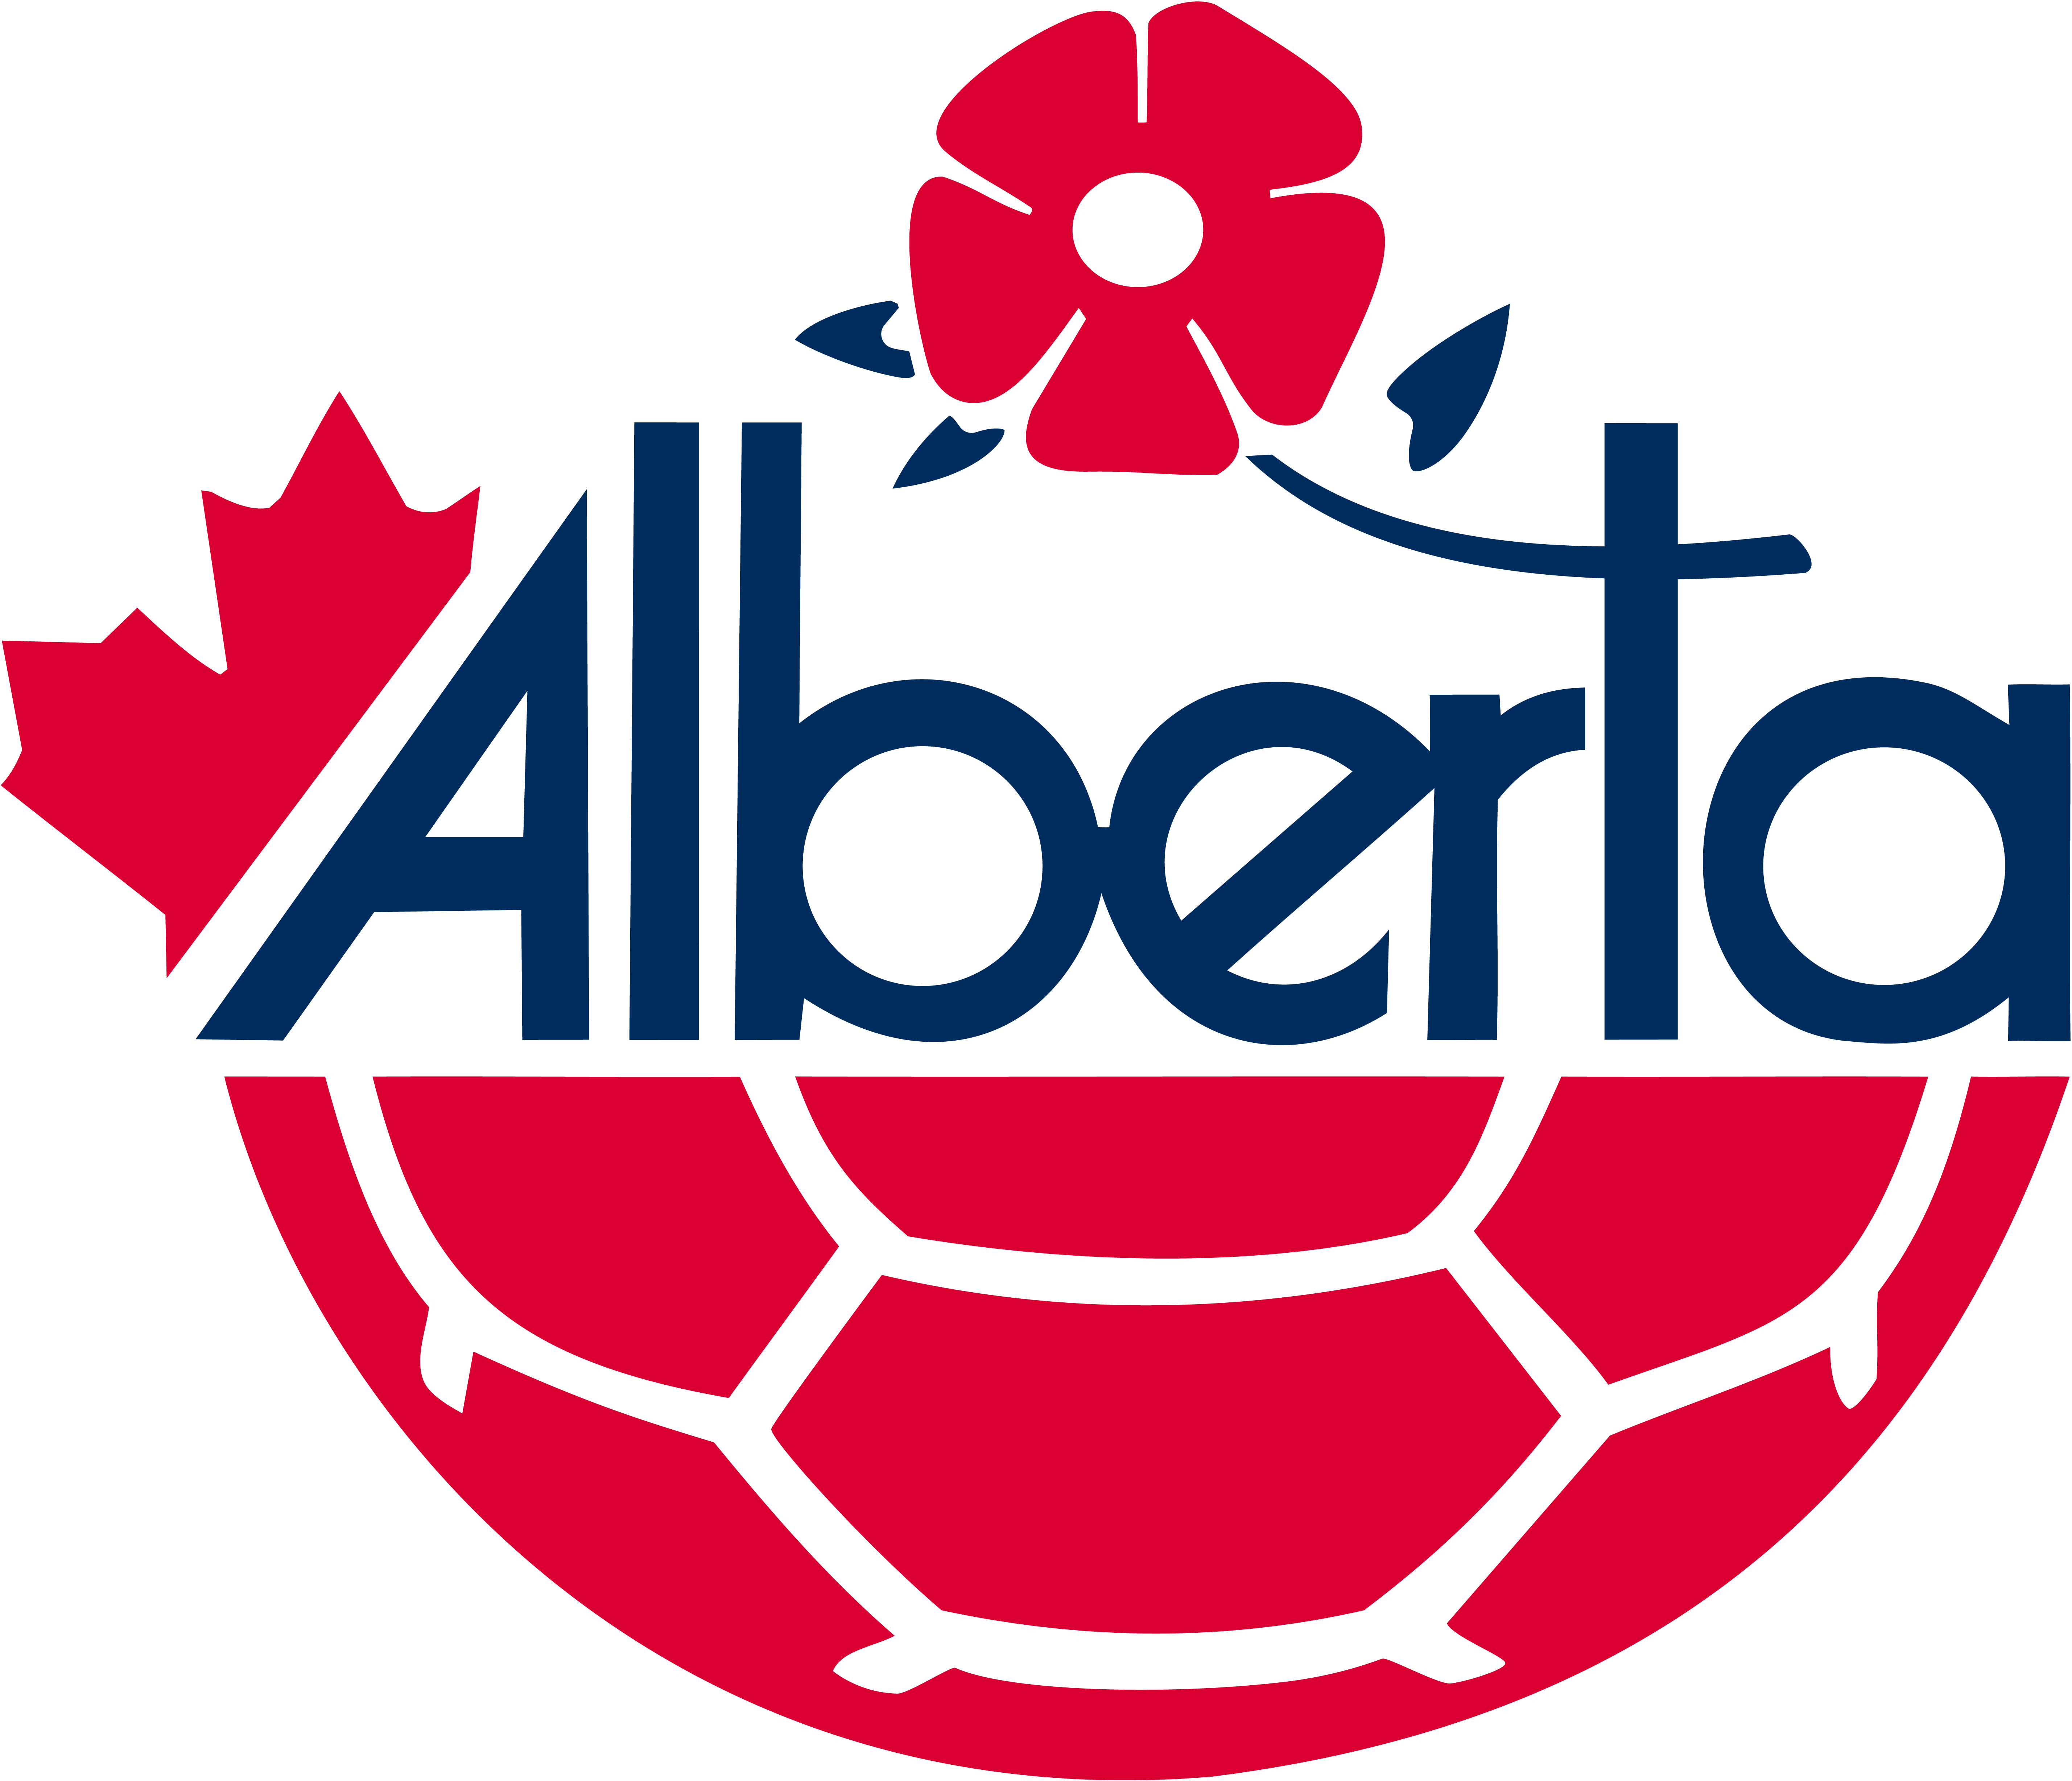 Alberta Soccer Association (S)